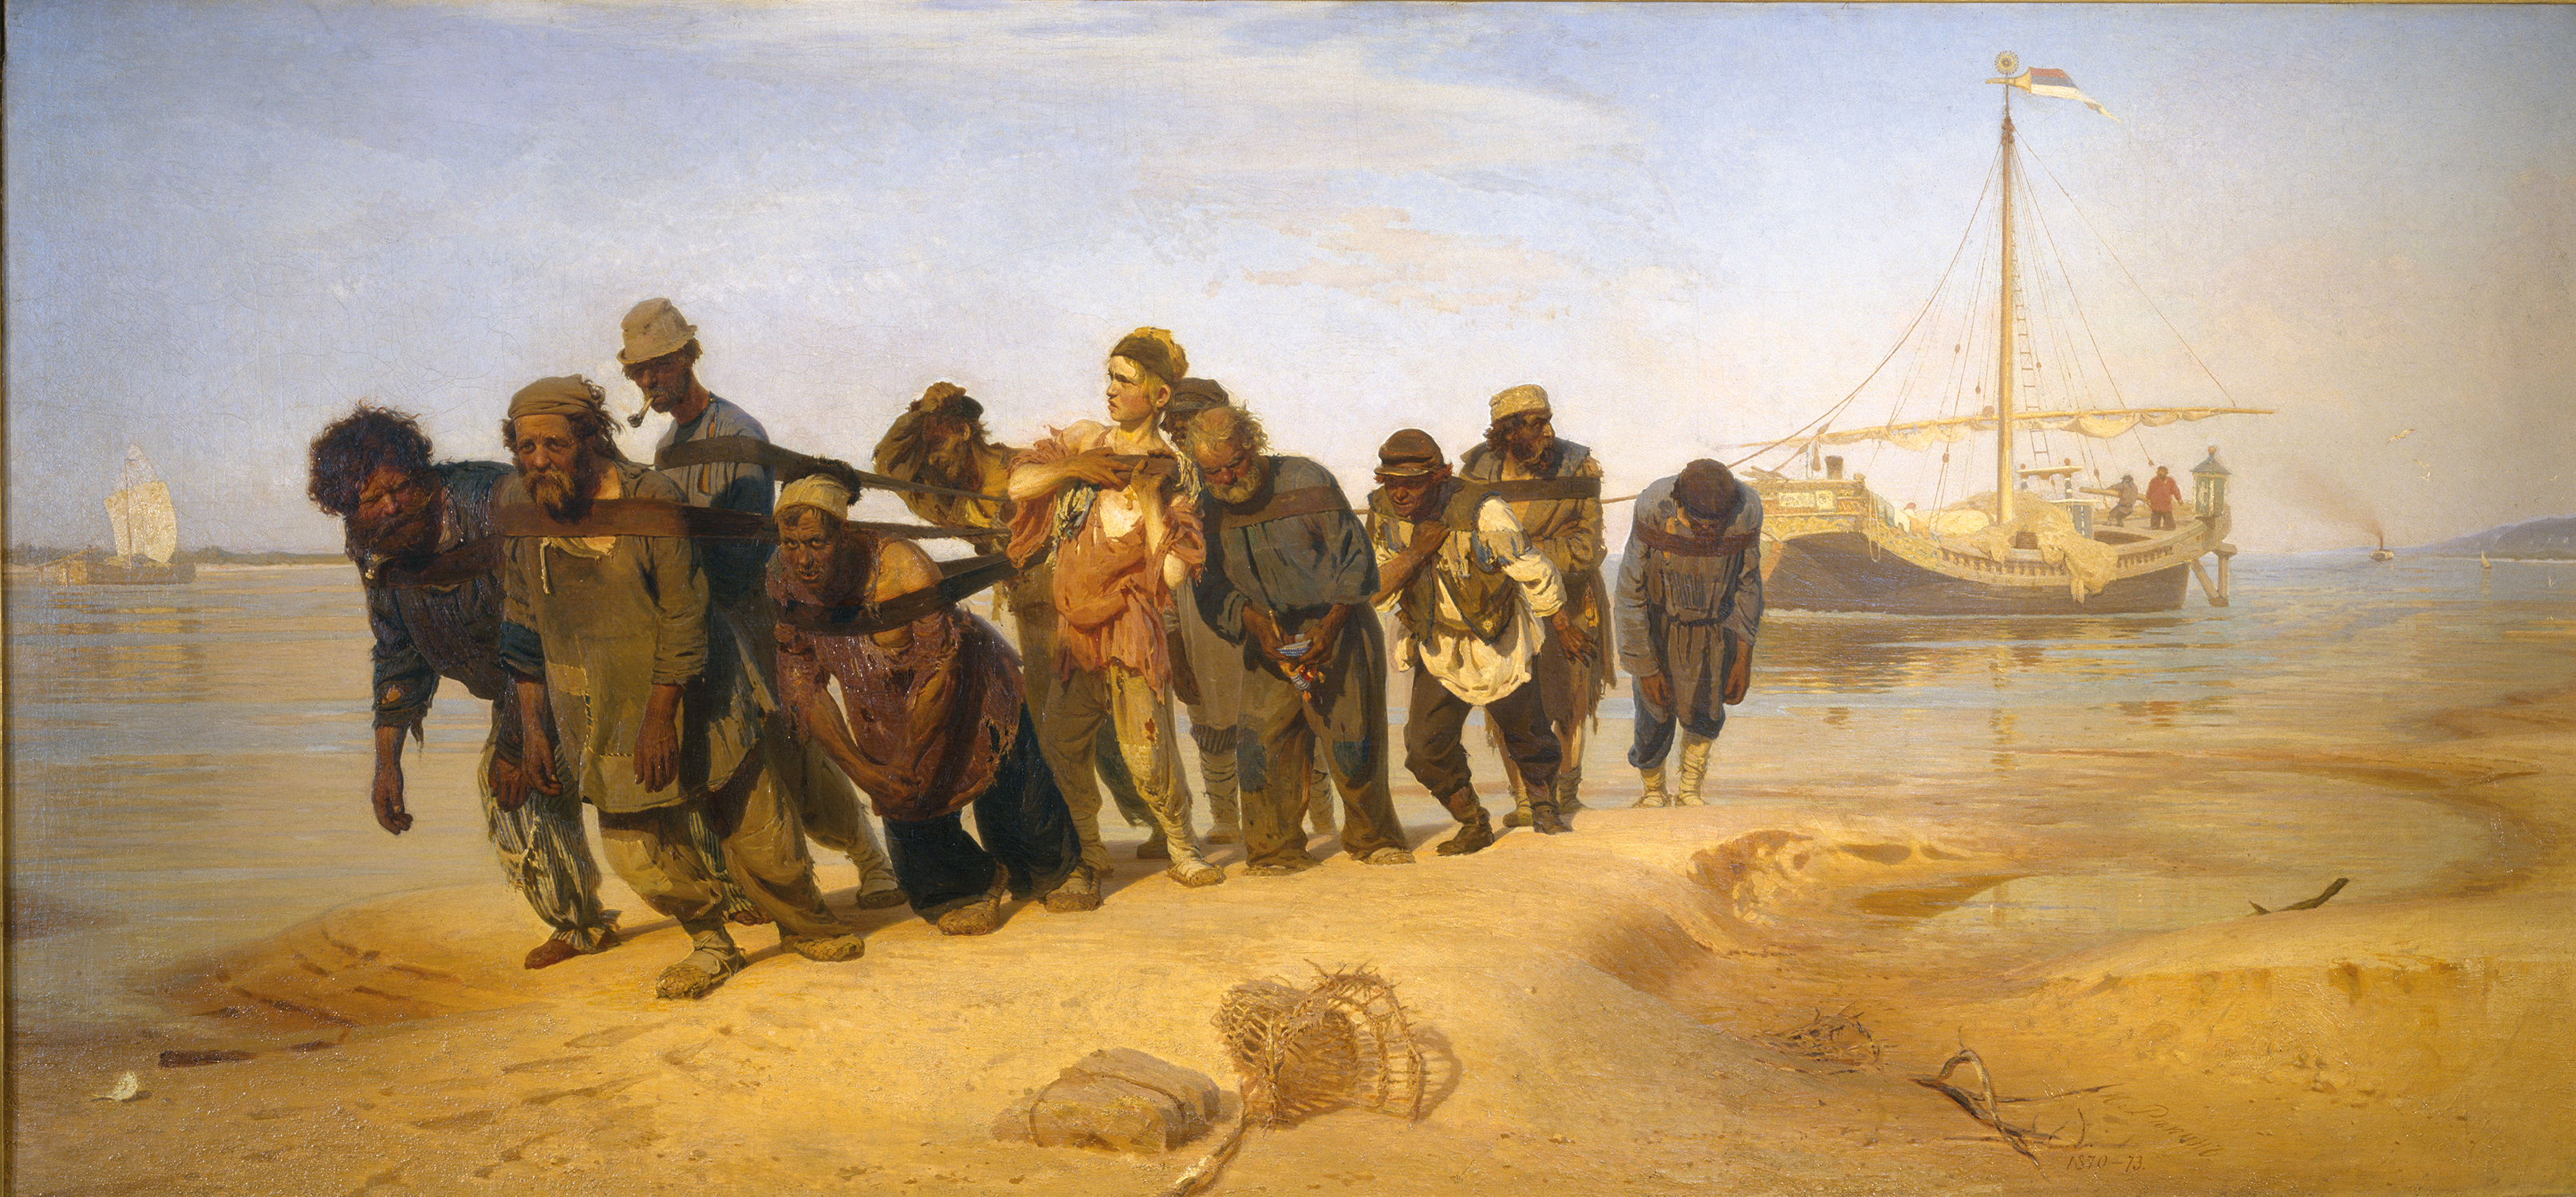 Les Bateliers de la Volga by Ilia Répine - 1873 - 131.5 cm × 281 cm 